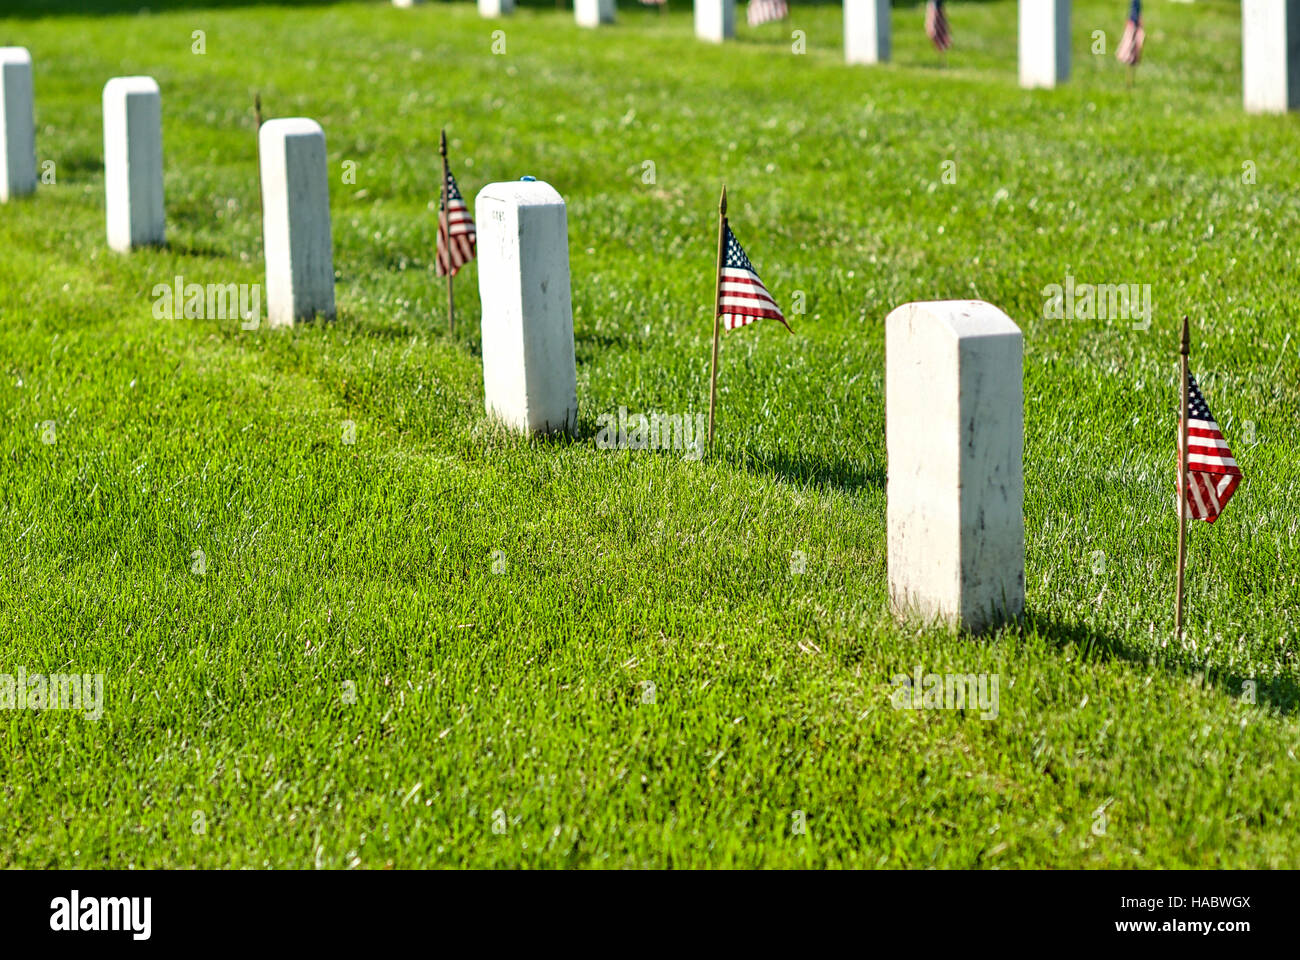 Fort Myer, Virginie, USA - 1 mai 2015 : American flags la mémoire des anciens combattants inhumés au cimetière national d'Arlington à Fort Myer, près de Washington, D.C. Banque D'Images